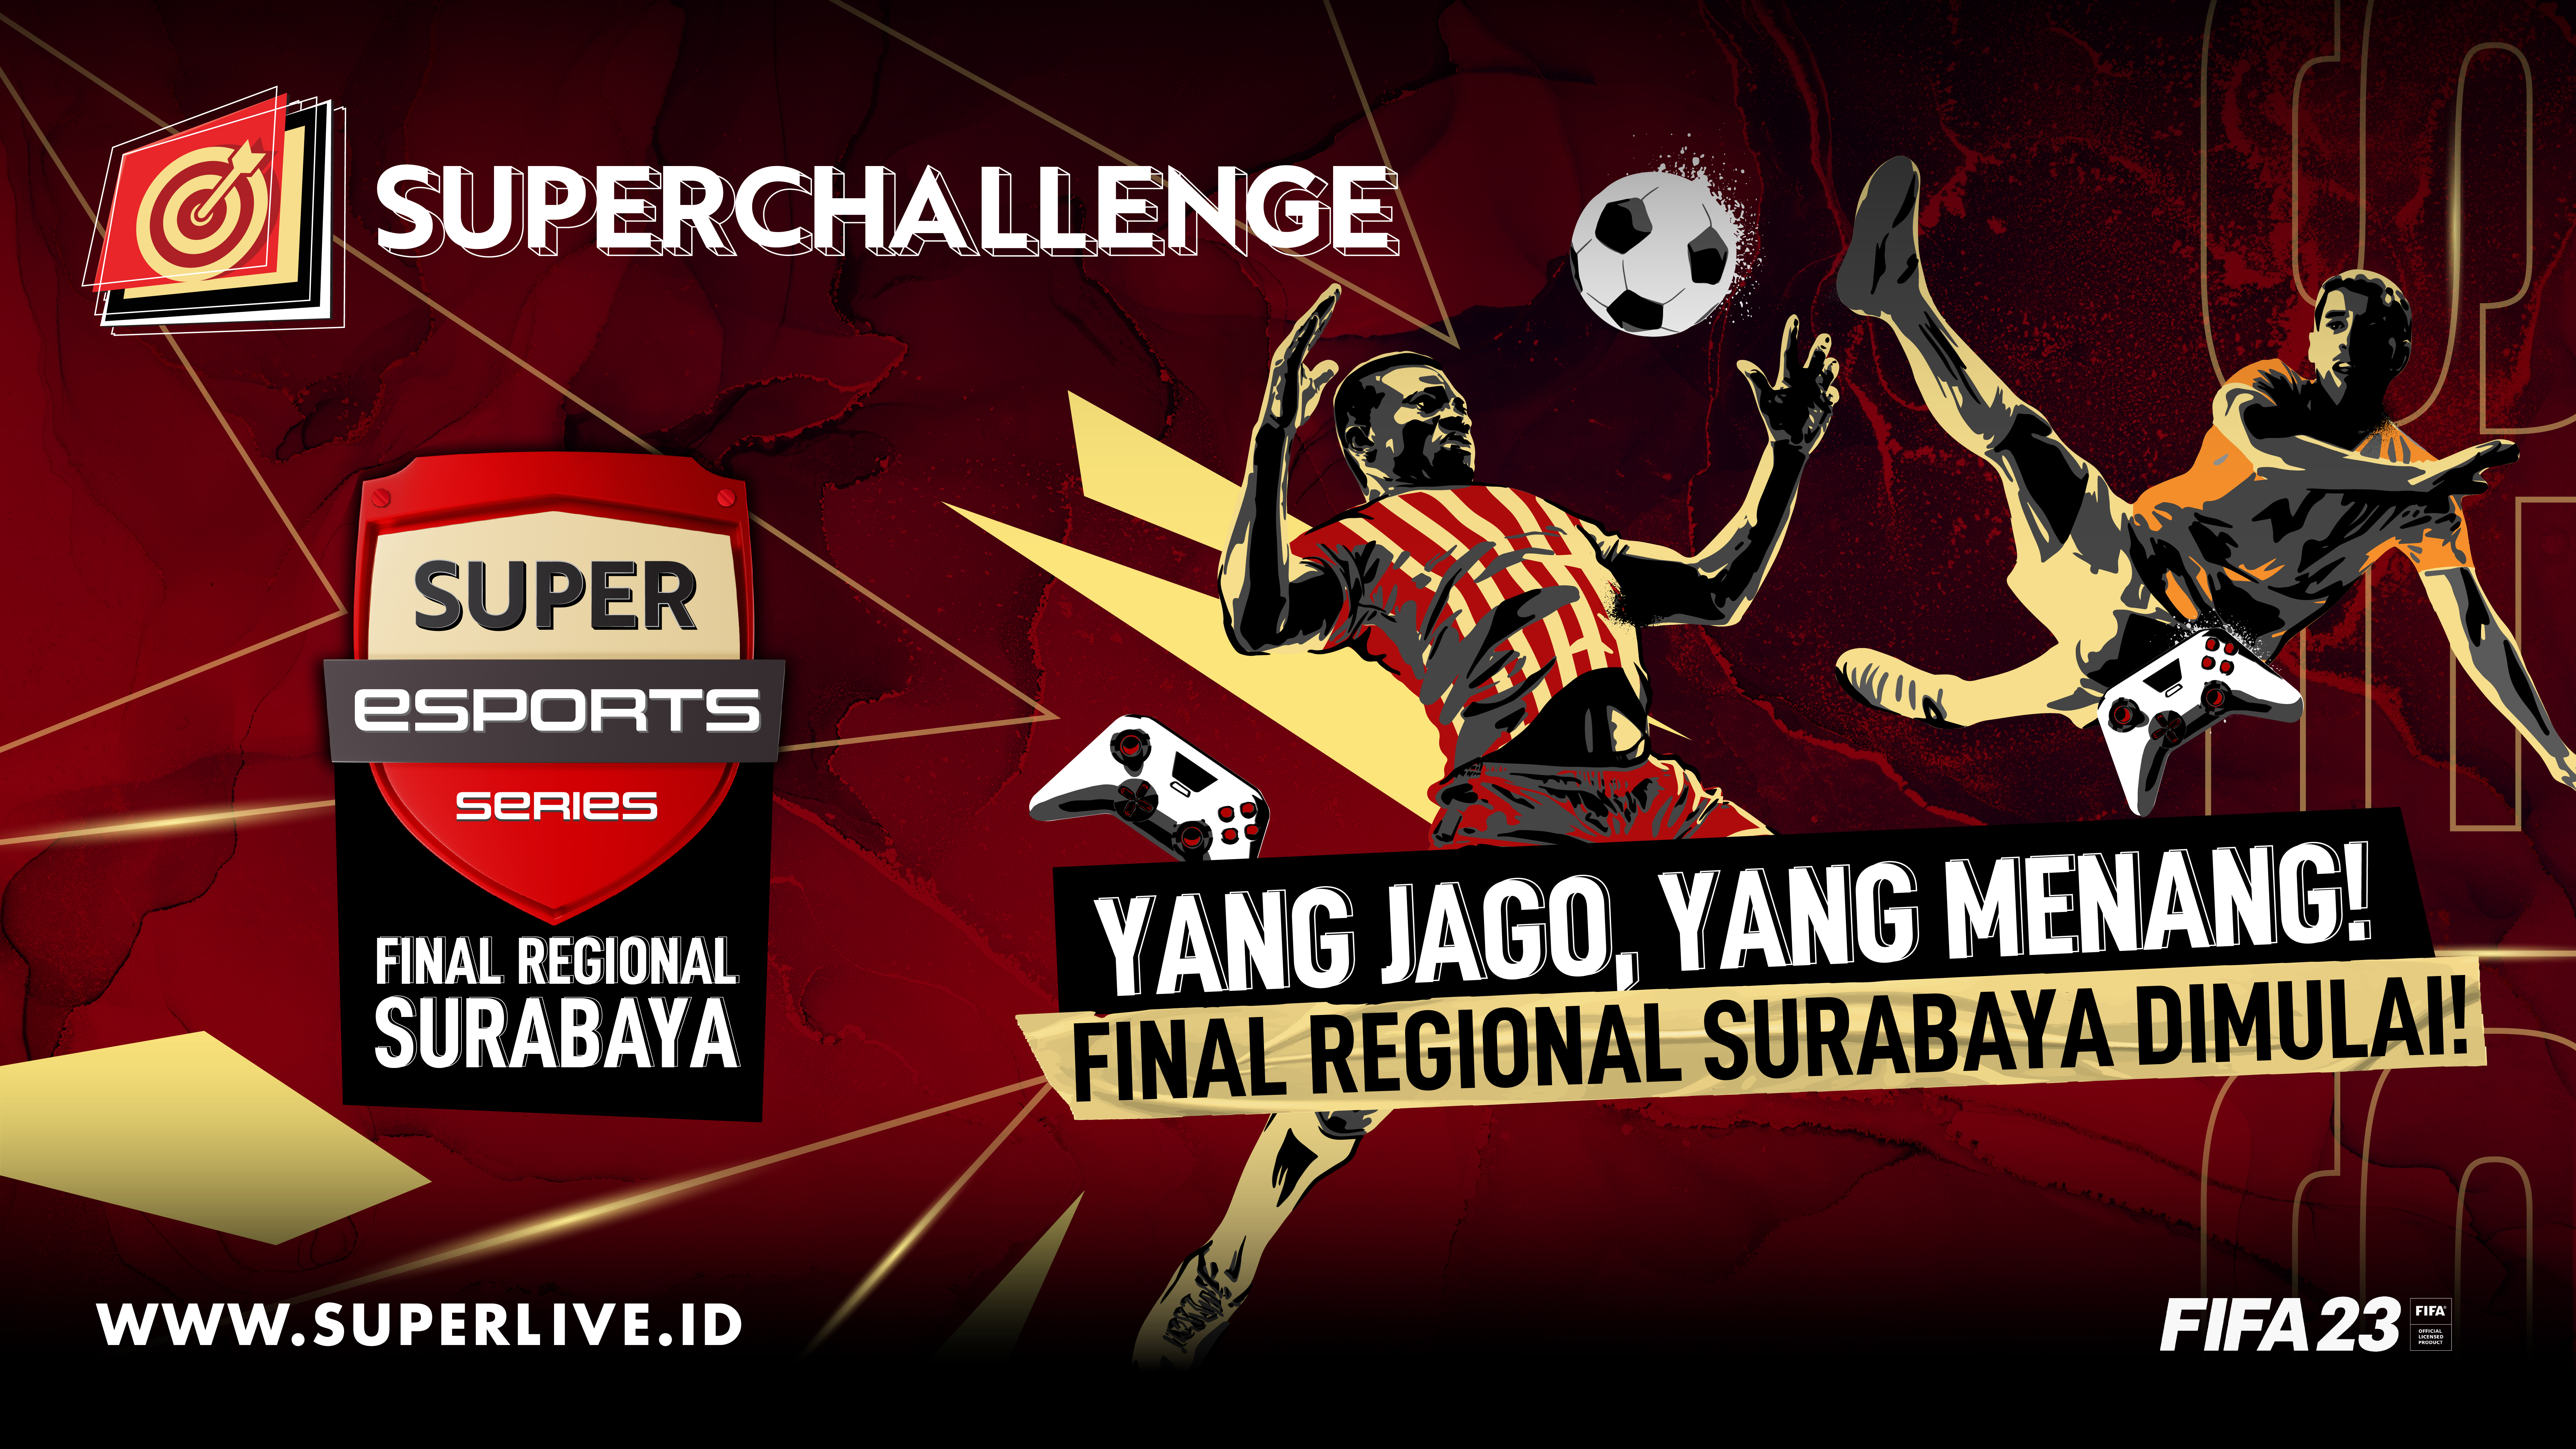 Juara Super Esports Series FIFA 2023 Final Regional Surabaya Akan Lahir Hari Ini,  Ayo Datang dan Jadi Saksinya!